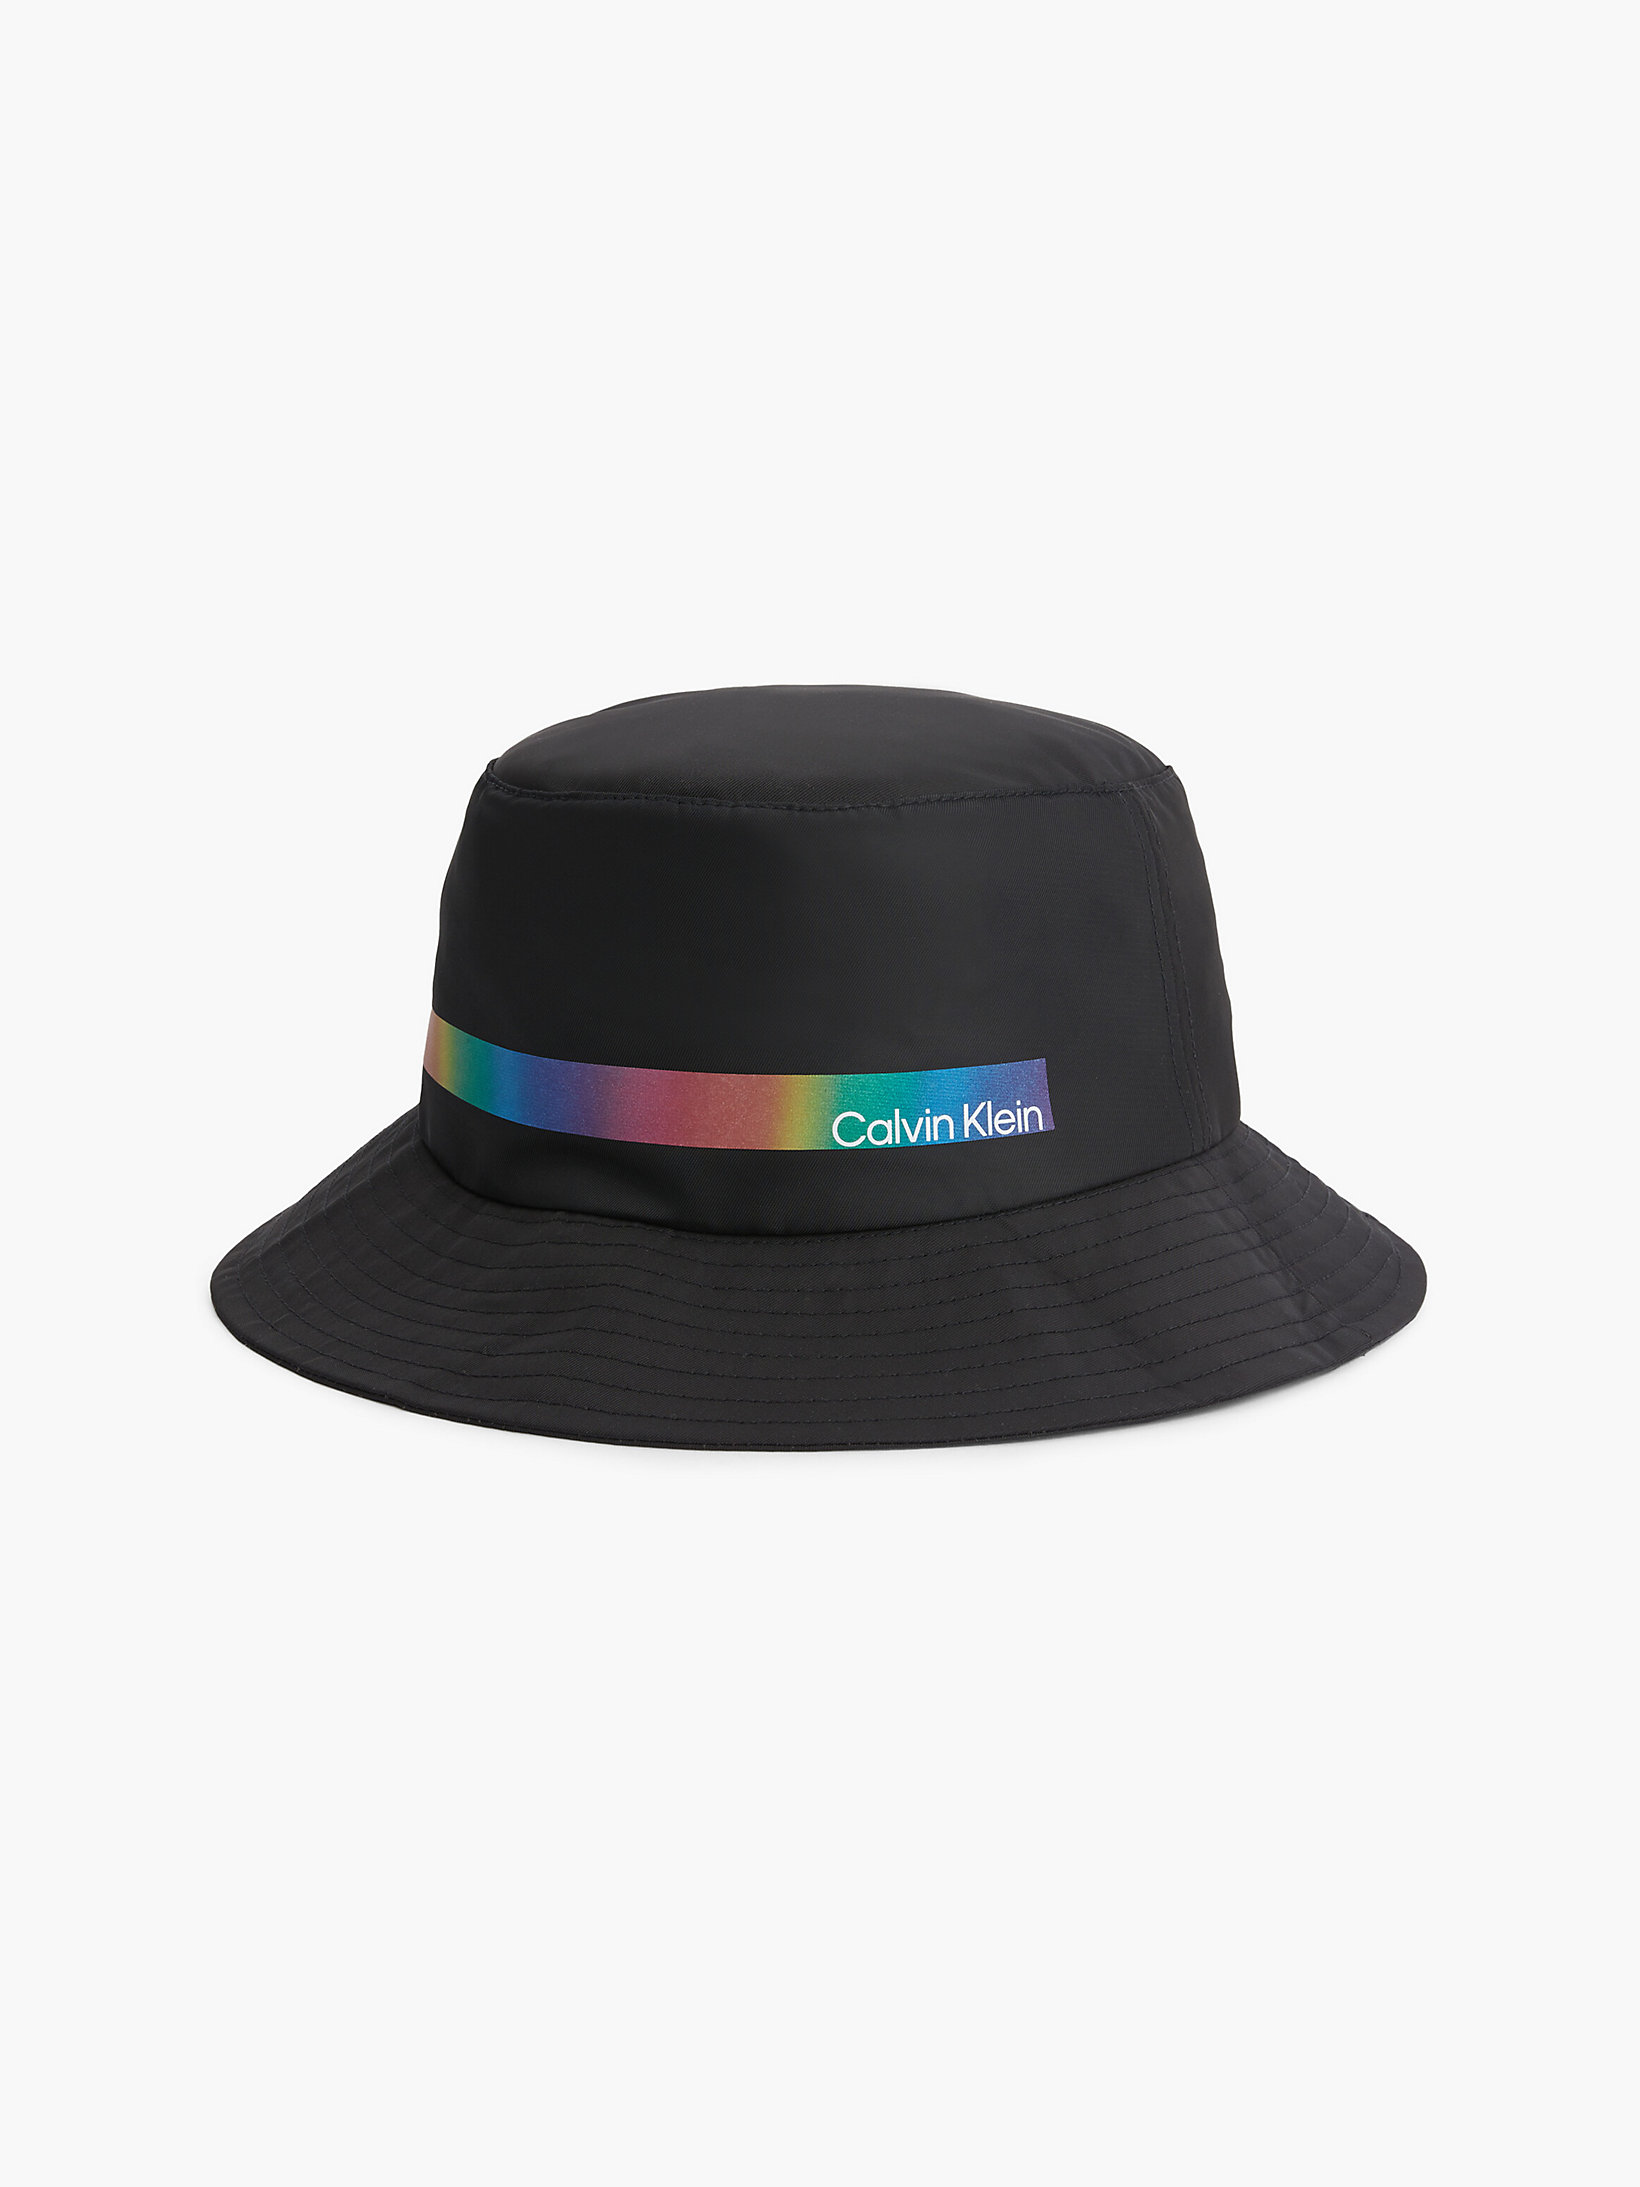 CK Black Verstaubarer Bucket Hat - Pride undefined unisex Calvin Klein